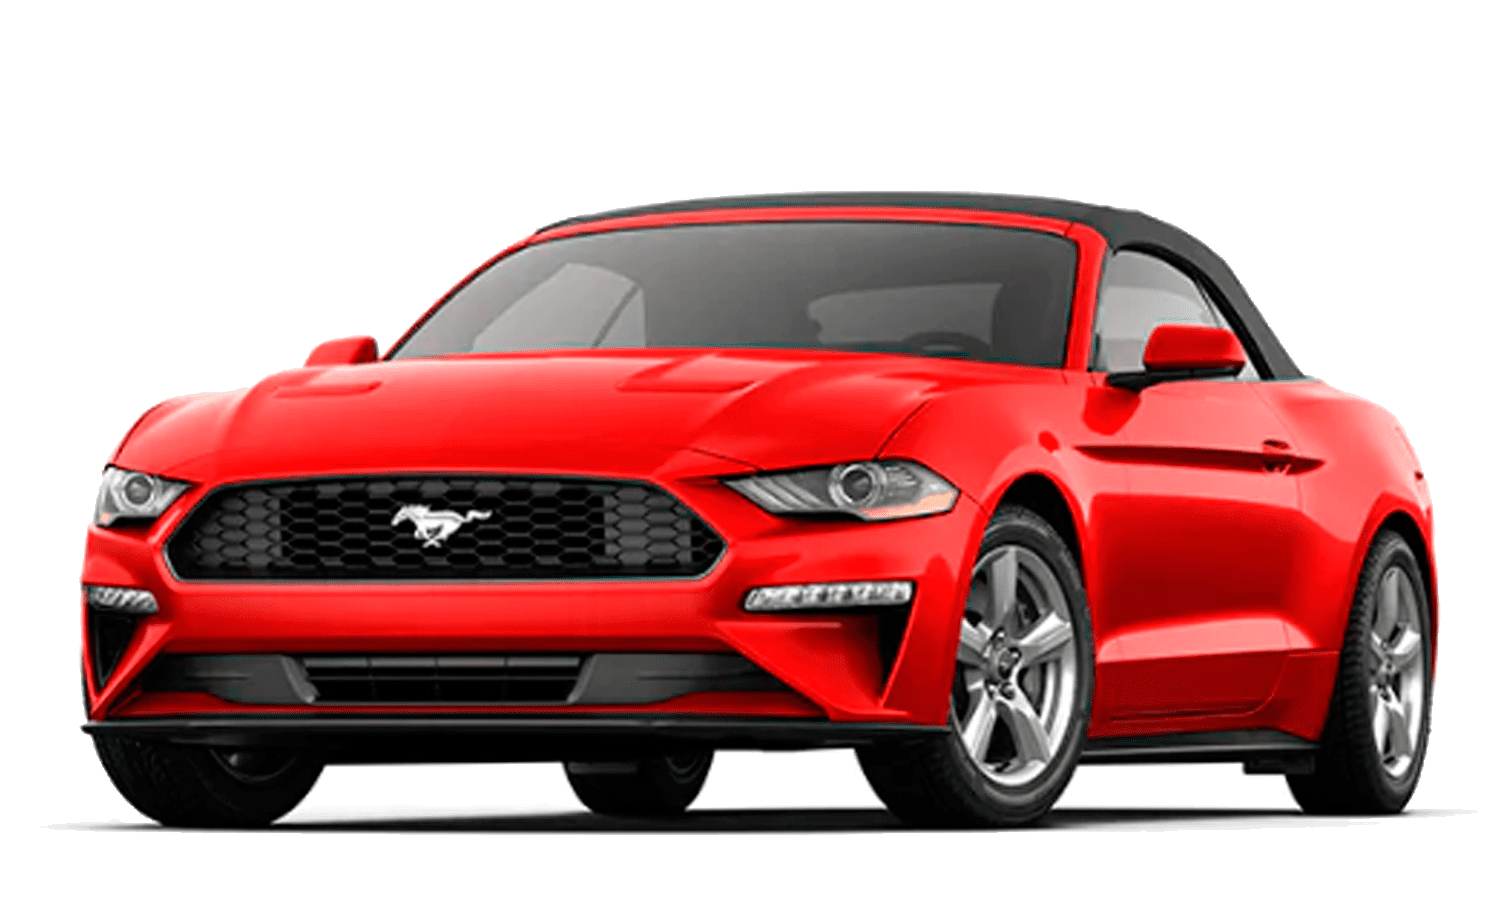 Ford Mustang 5.0 GT Jancars, alquiler de coches de alta gama, deportivos y de lujo